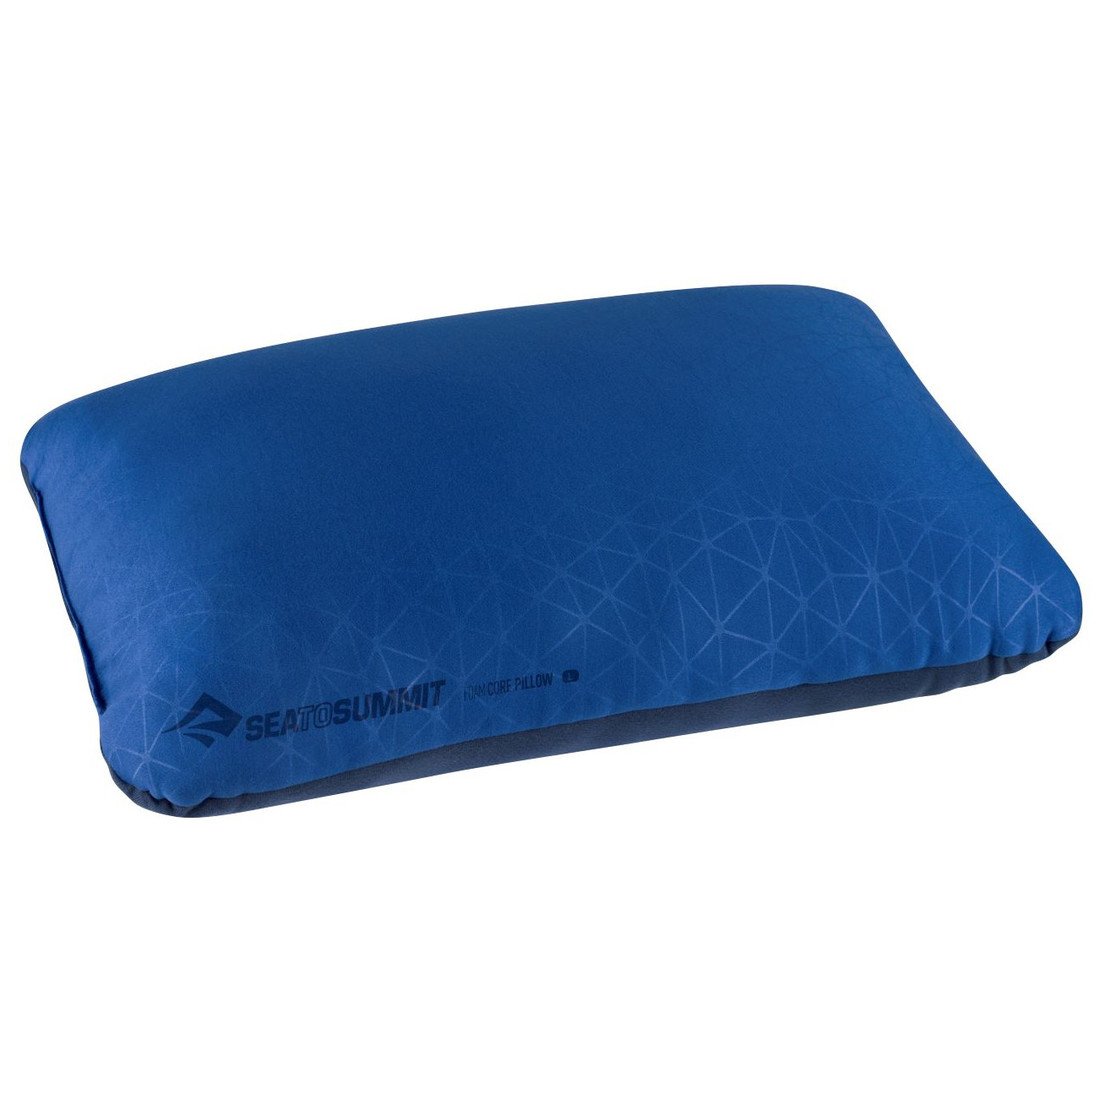 Polštář FoamCore Pillow Large  Navy Blue (barva Navy modrá)